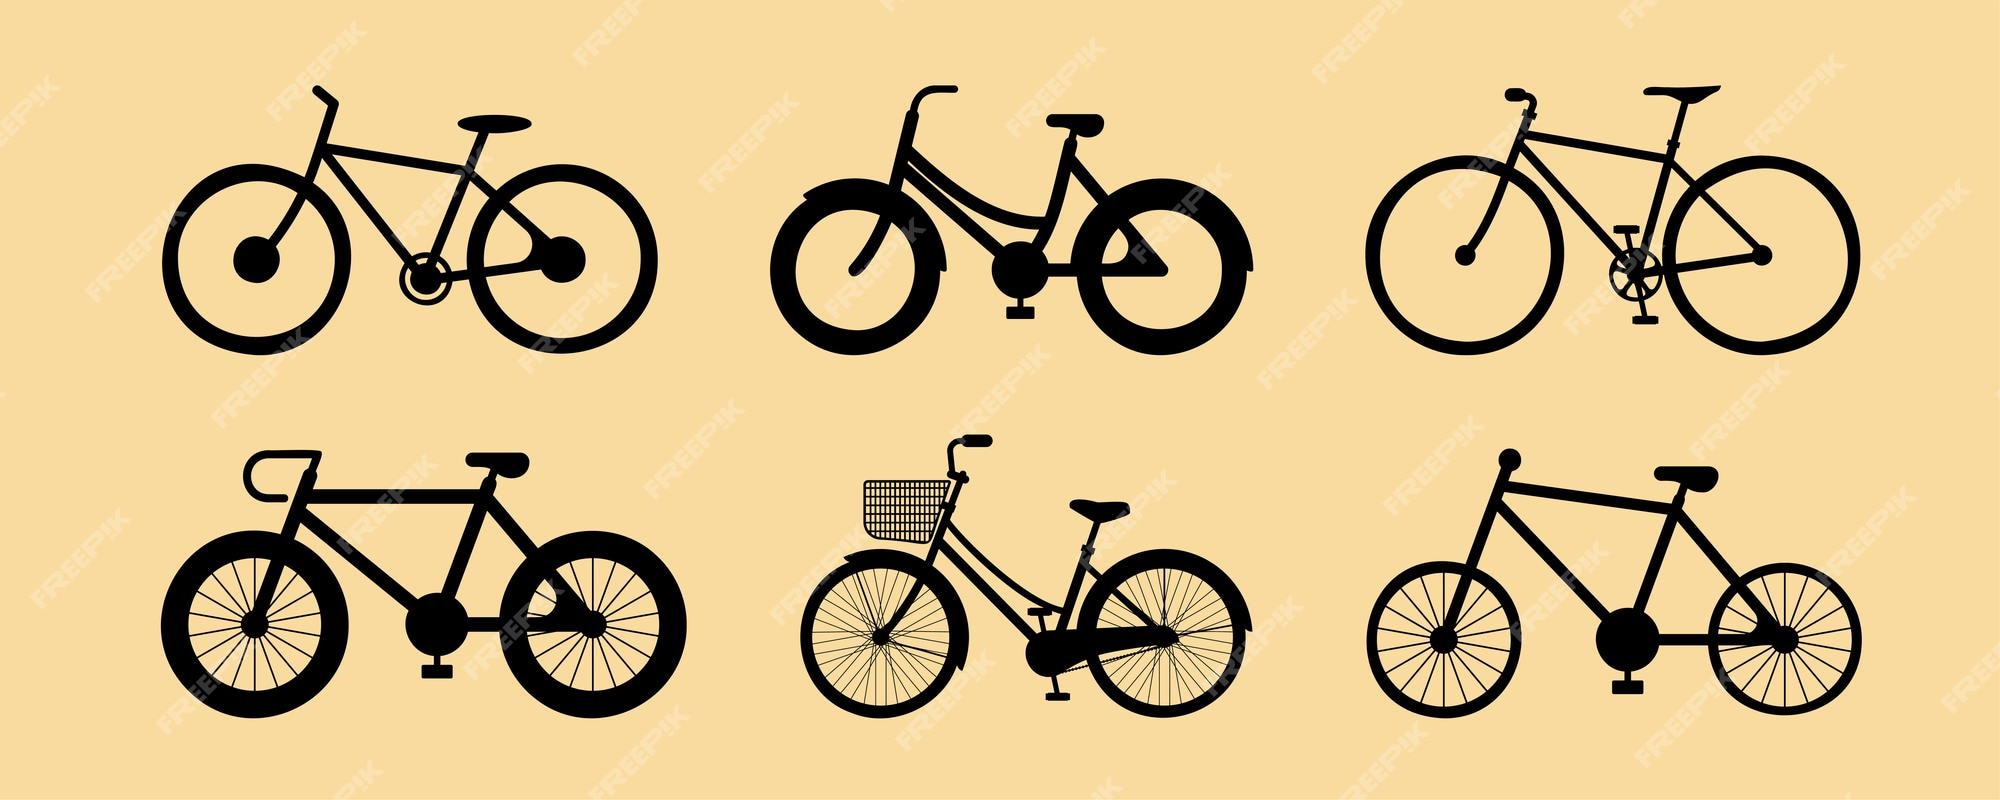 Pensionista Broma Almeja Imágenes de Bicicleta - Descarga gratuita en Freepik